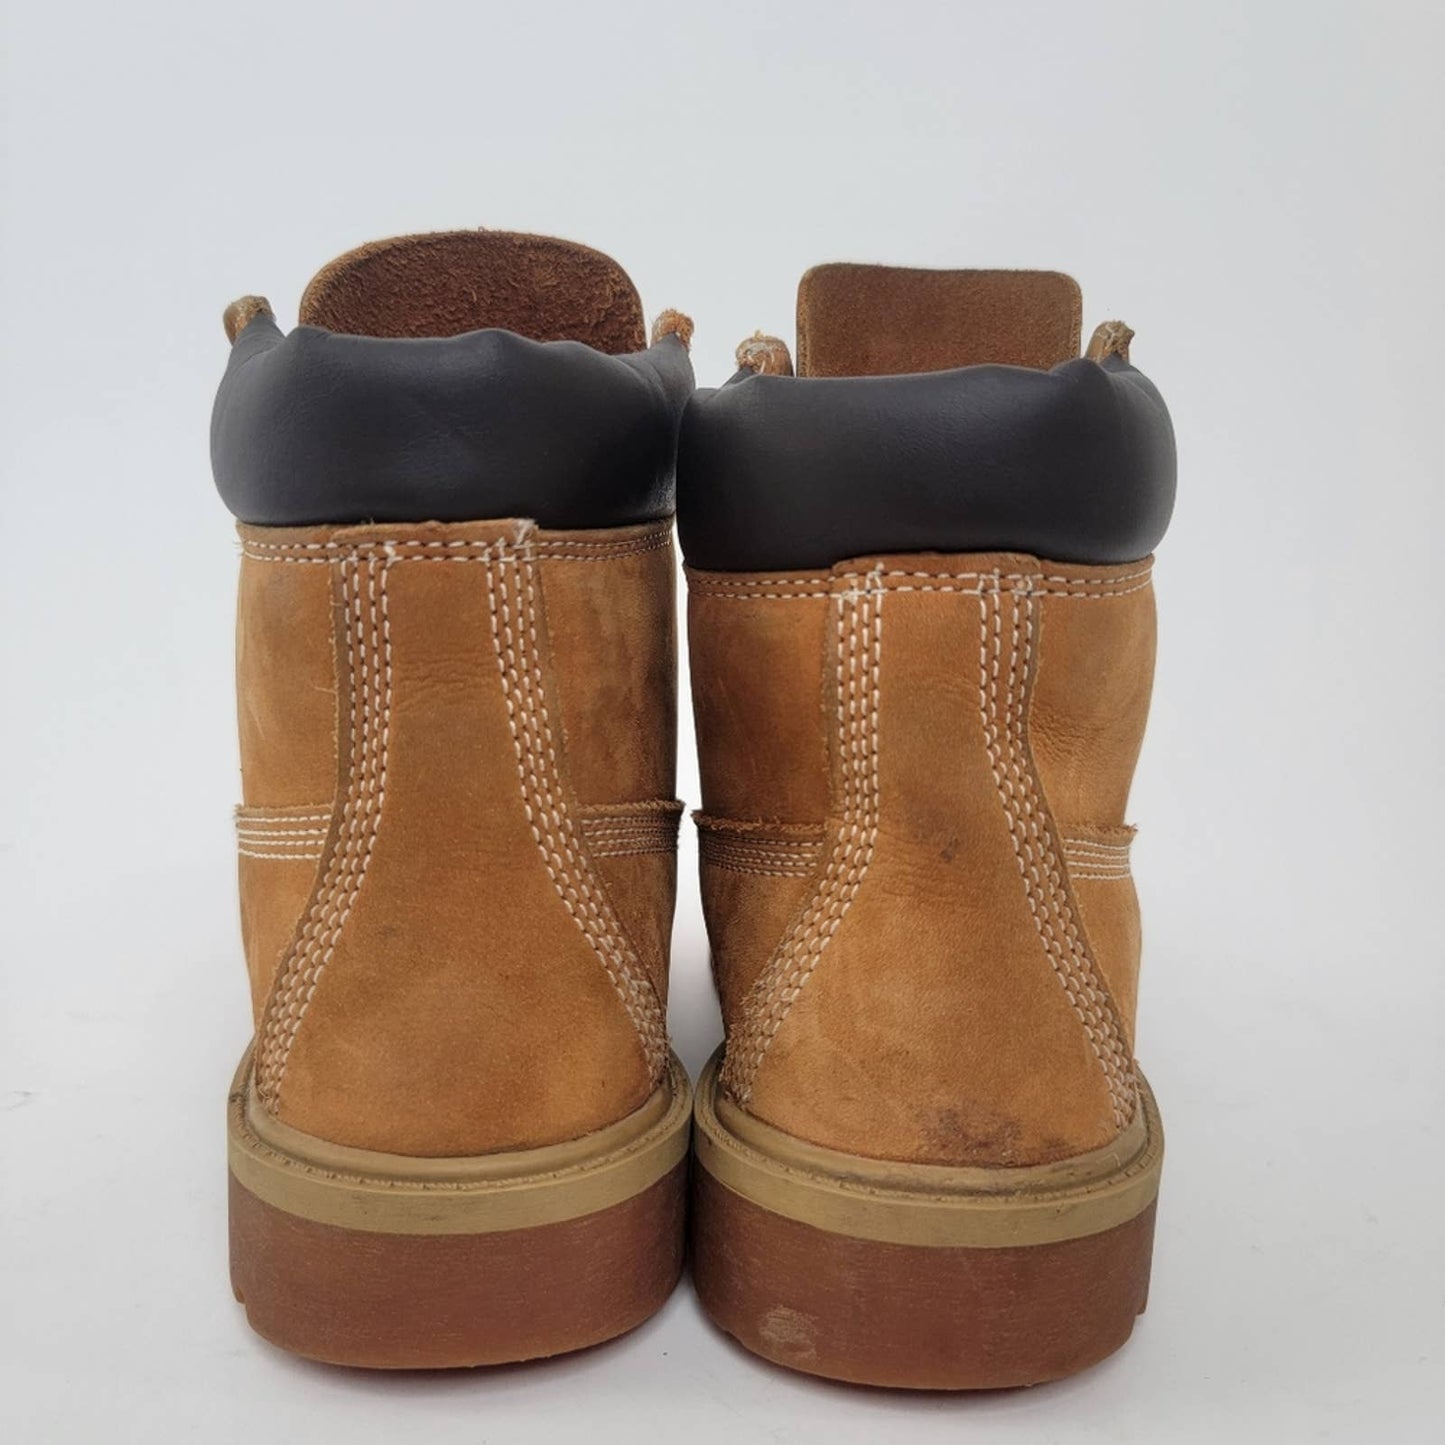 Timberland Premium Waterproof Boots